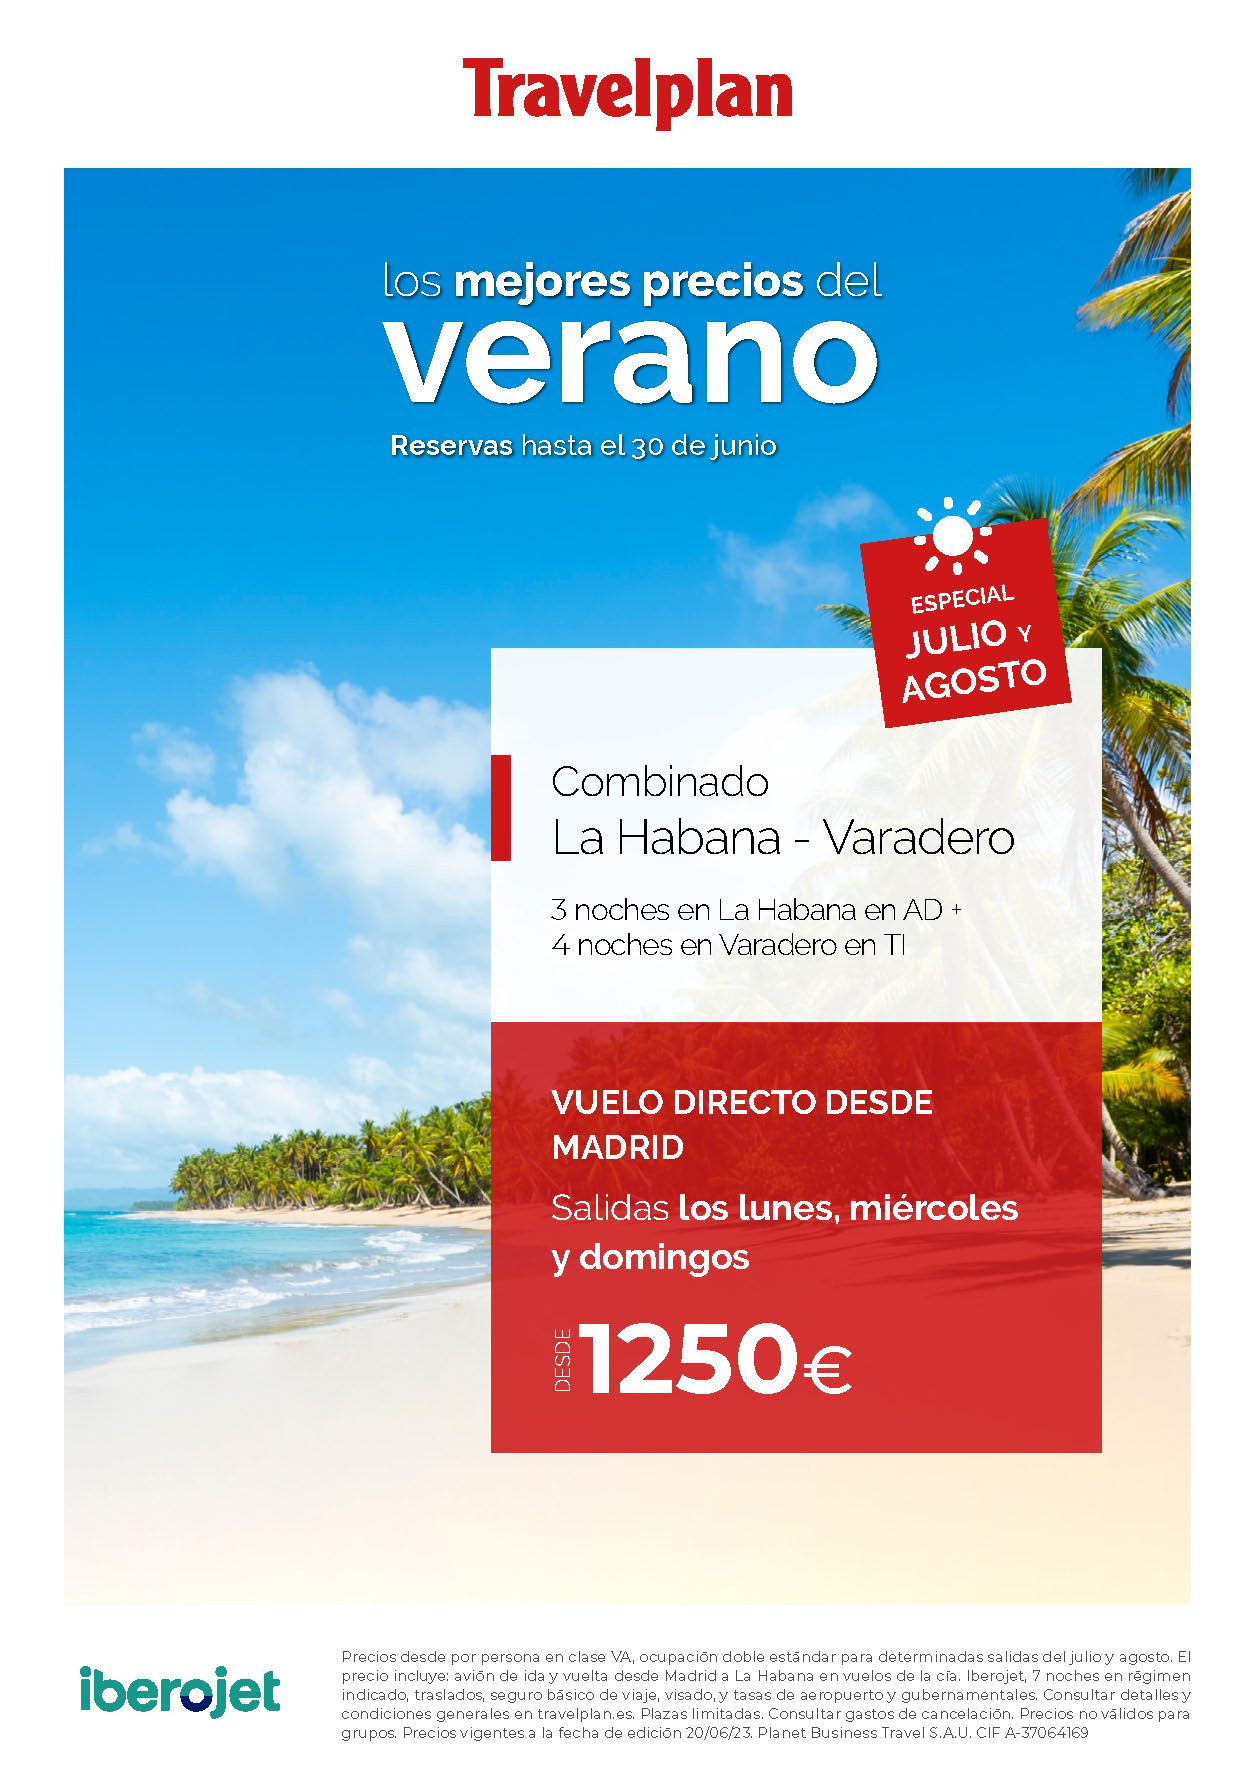 Oferta Travelplan Julio y Agosto 2023 Combinado La Habana Varadero 9 dias AD Todo Incluido salidas en vuelos directos desde Madrid